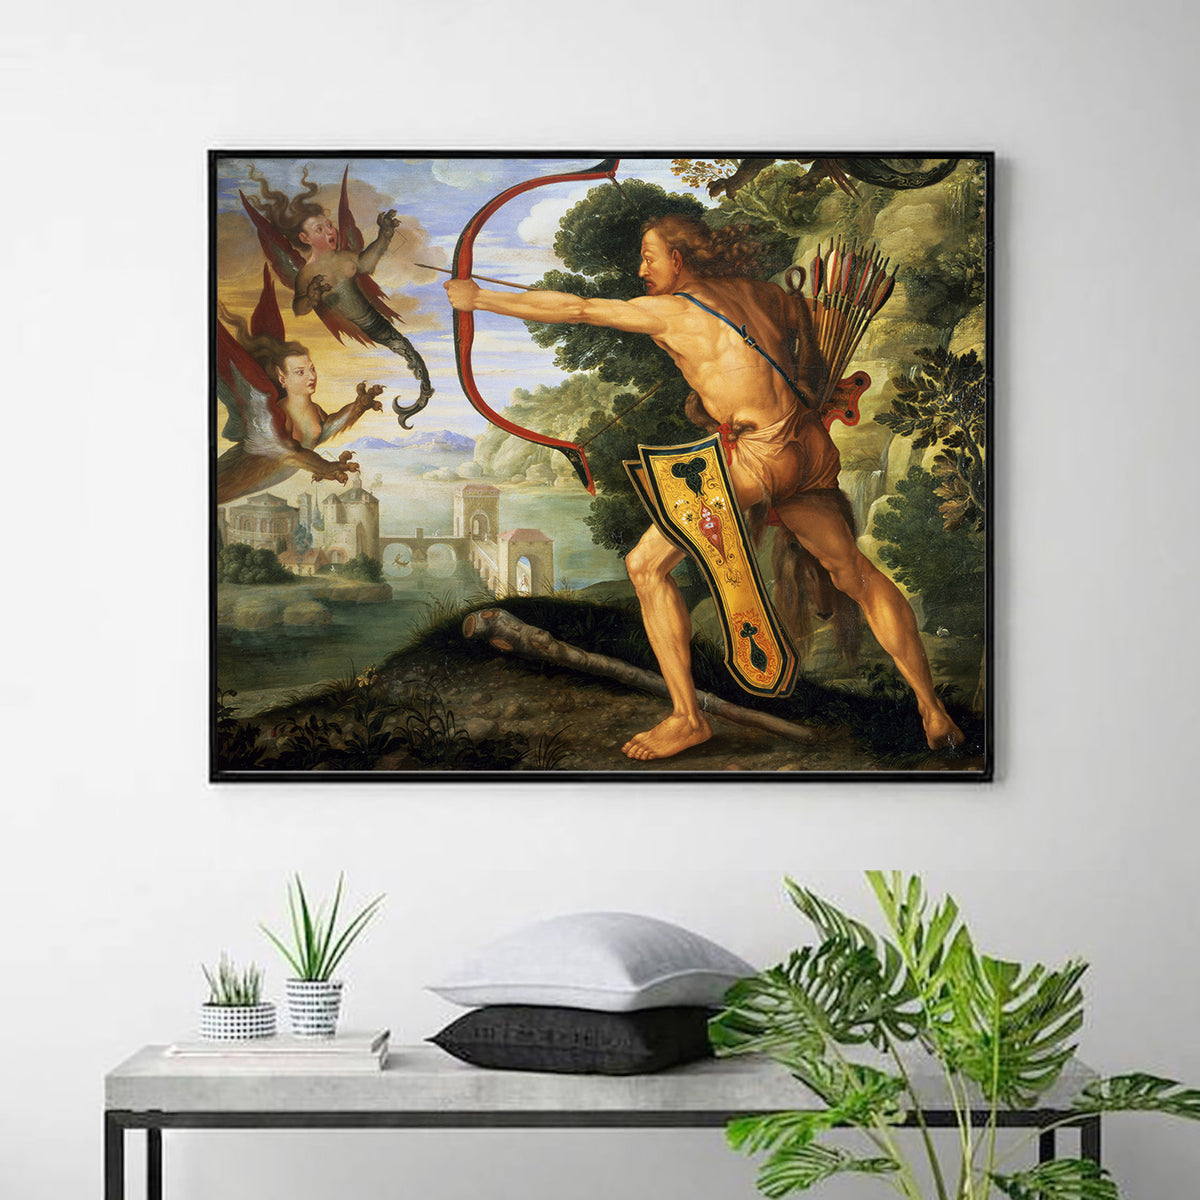 Hercules and the Stymphalian Birds by Albrecht Durer